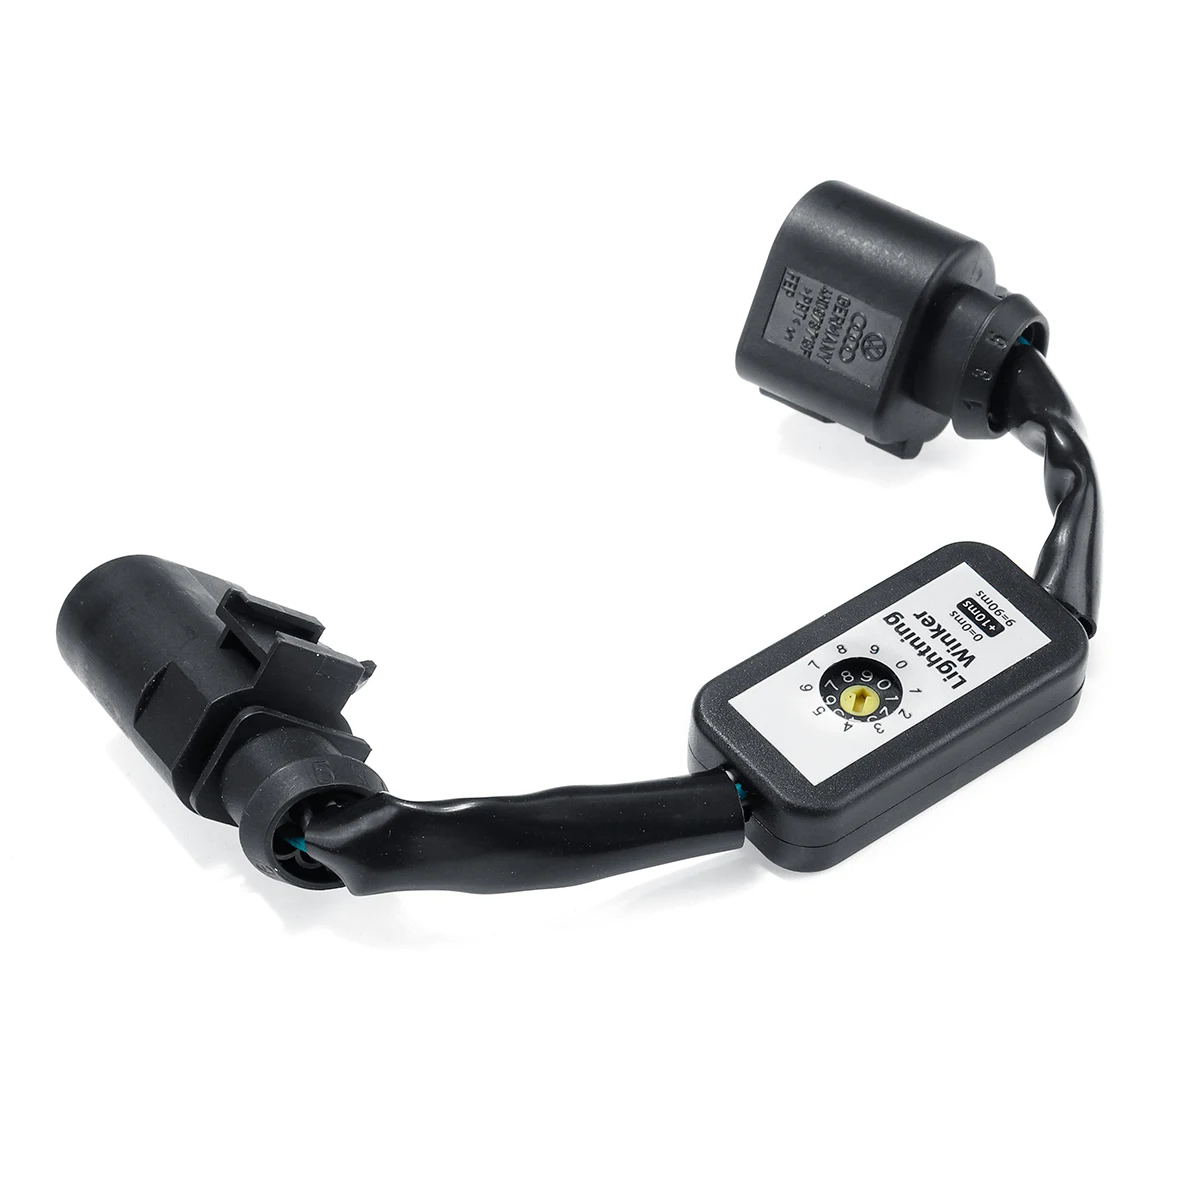 2X Динамический указатель поворота светодиодный задний светильник дополнительный модуль кабель жгут проводов для AUDI A6 S6 RS6 4G C7 левый и правый задний светильник